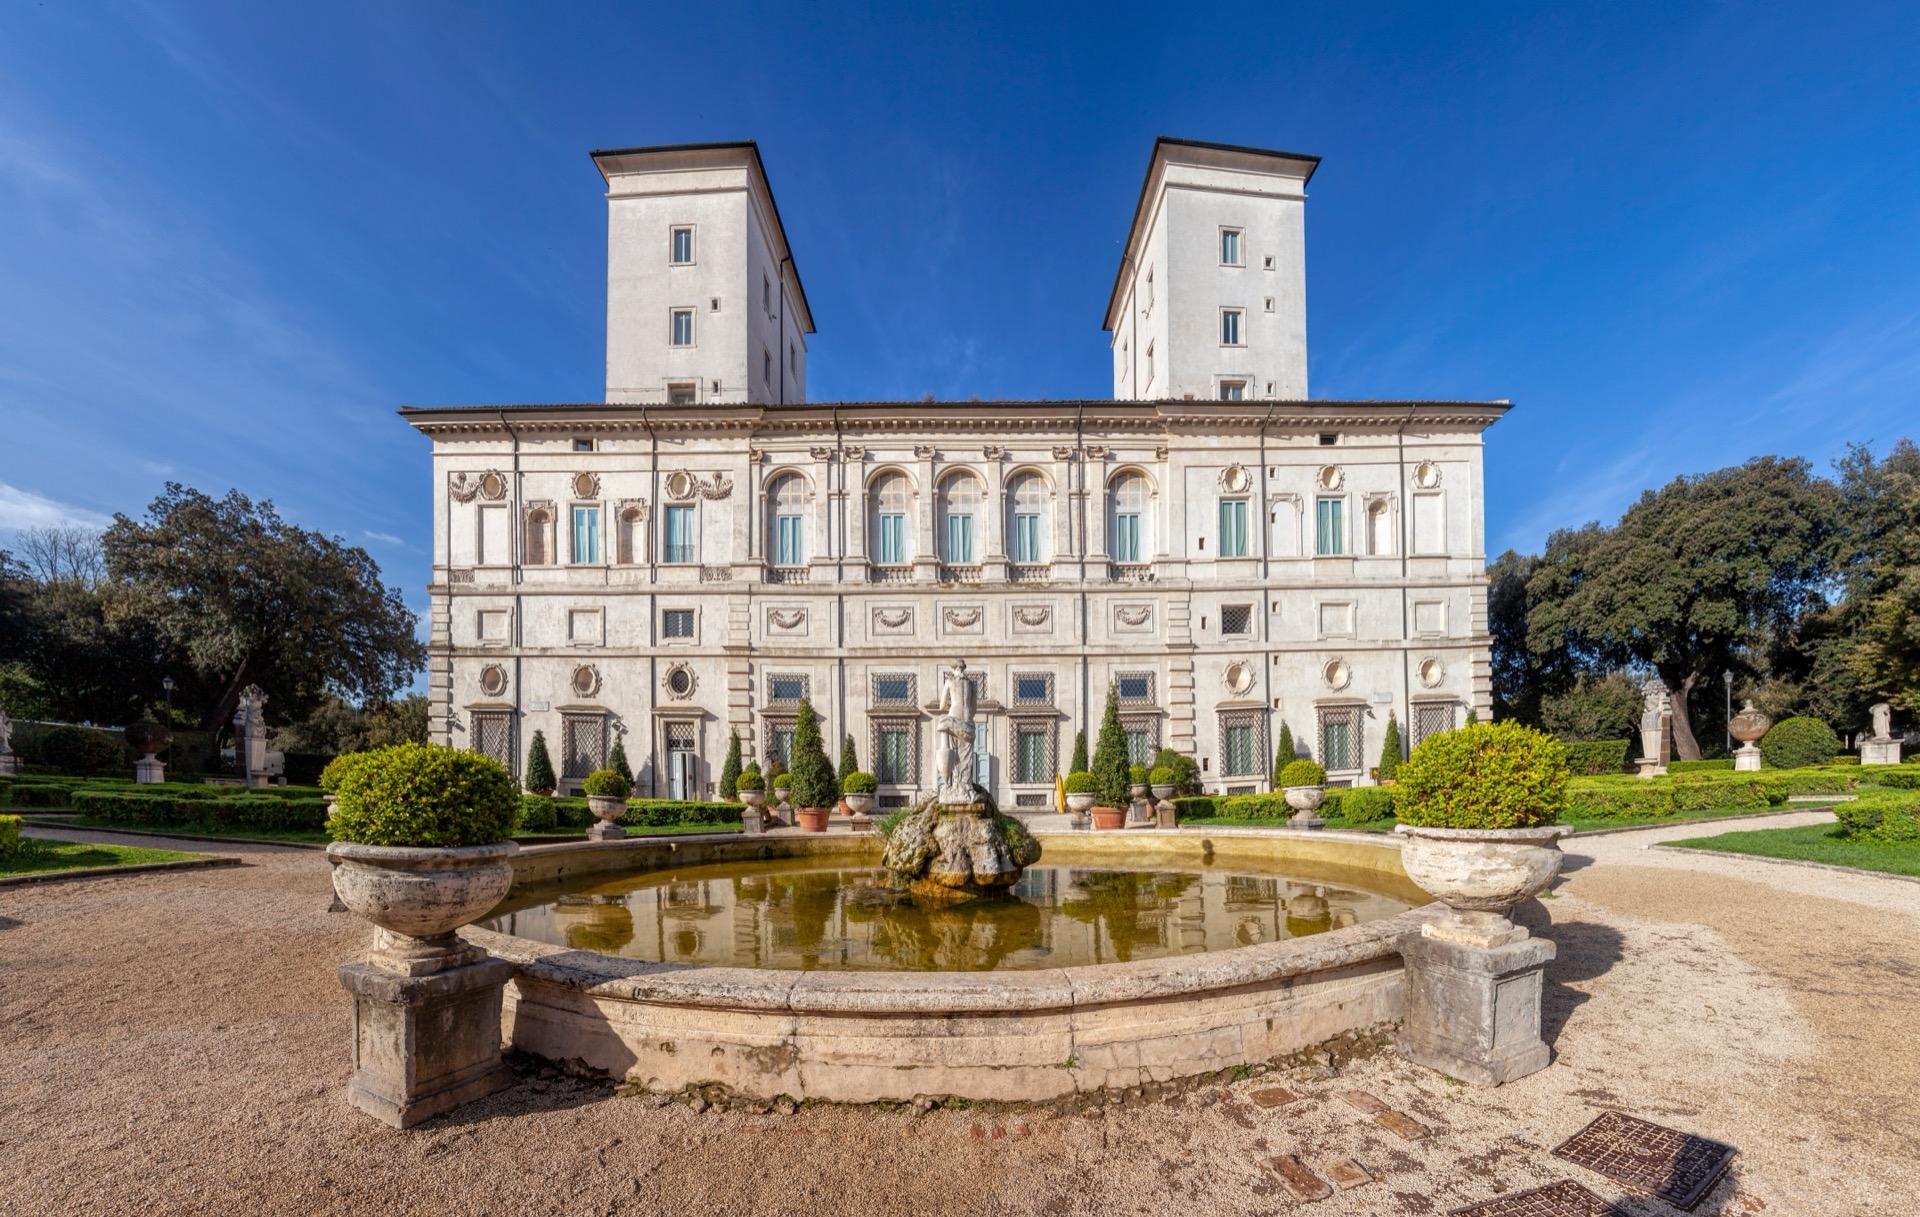 Galleria Borghese [it]